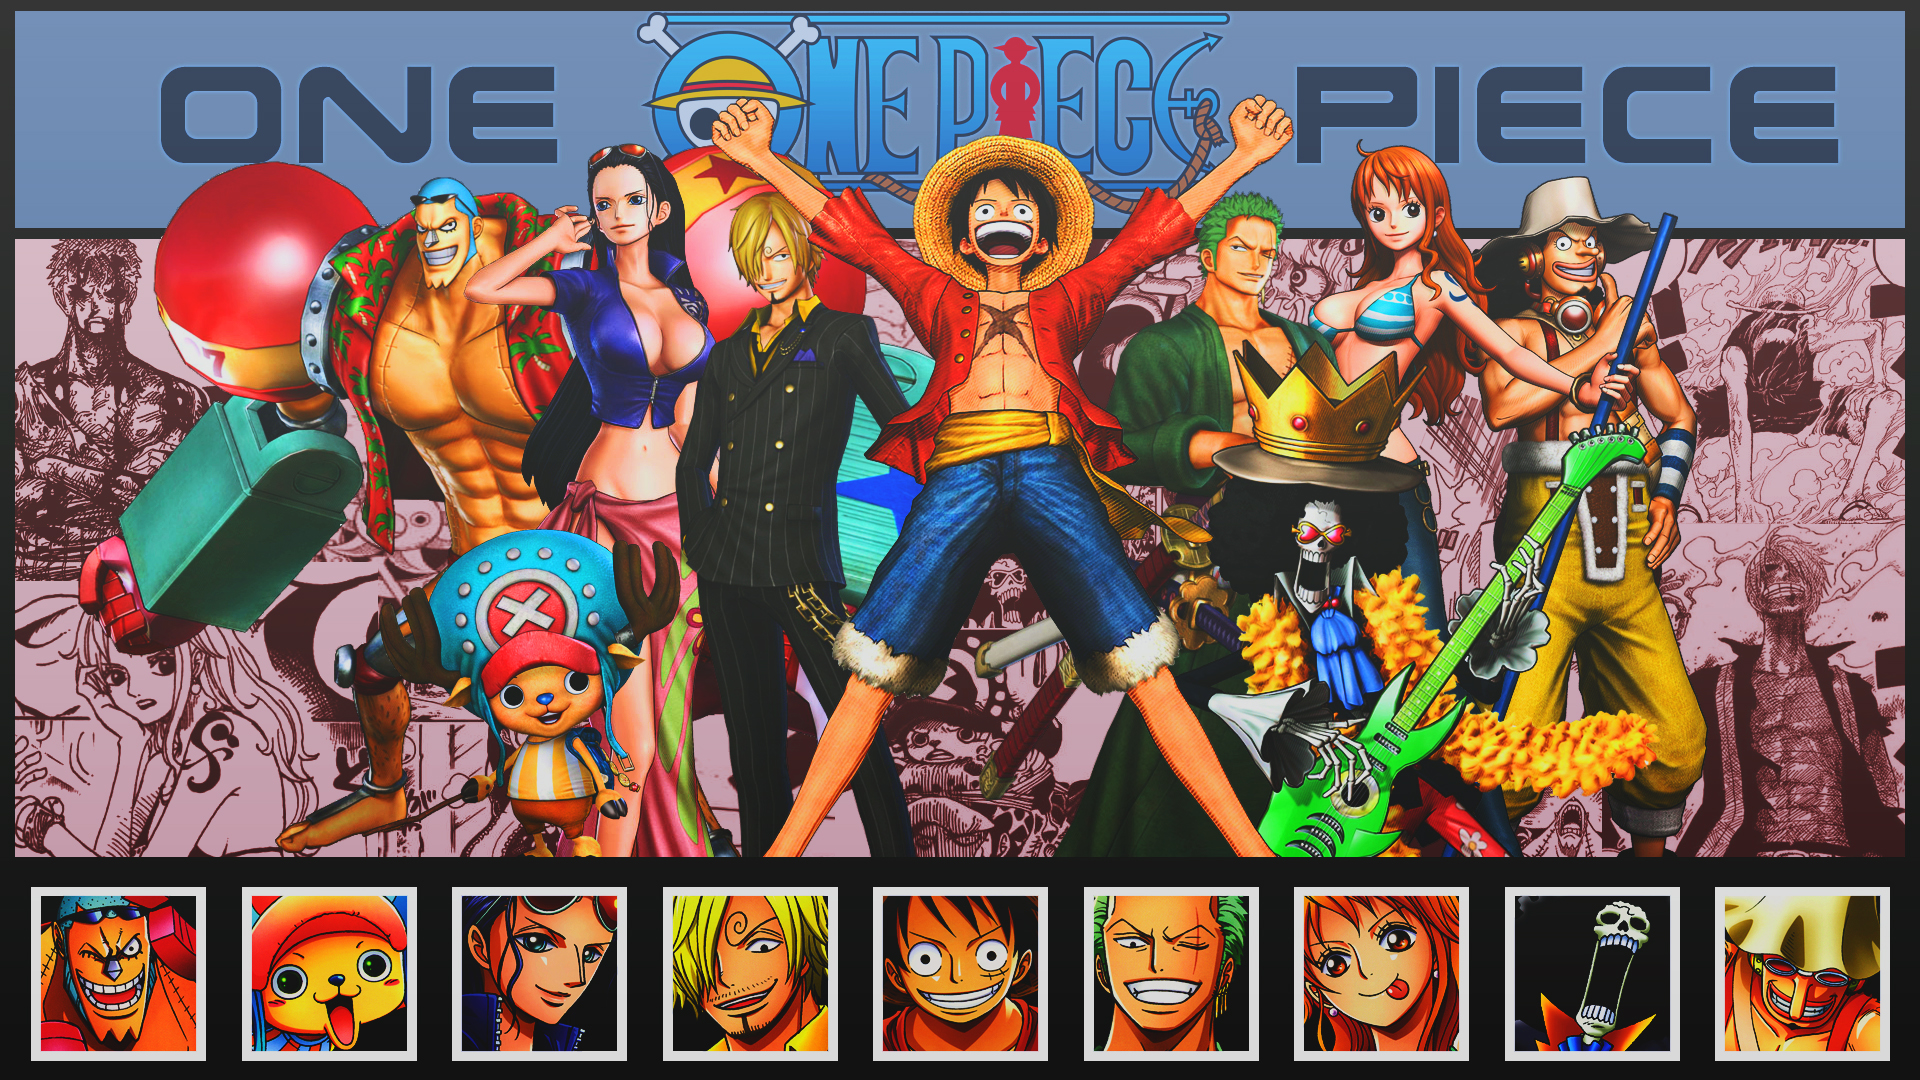 Free download wallpaper Anime, One Piece, Tony Tony Chopper, Usopp (One Piece), Roronoa Zoro, Monkey D Luffy, Nami (One Piece), Sanji (One Piece), Brook (One Piece), Nico Robin, Franky (One Piece) on your PC desktop